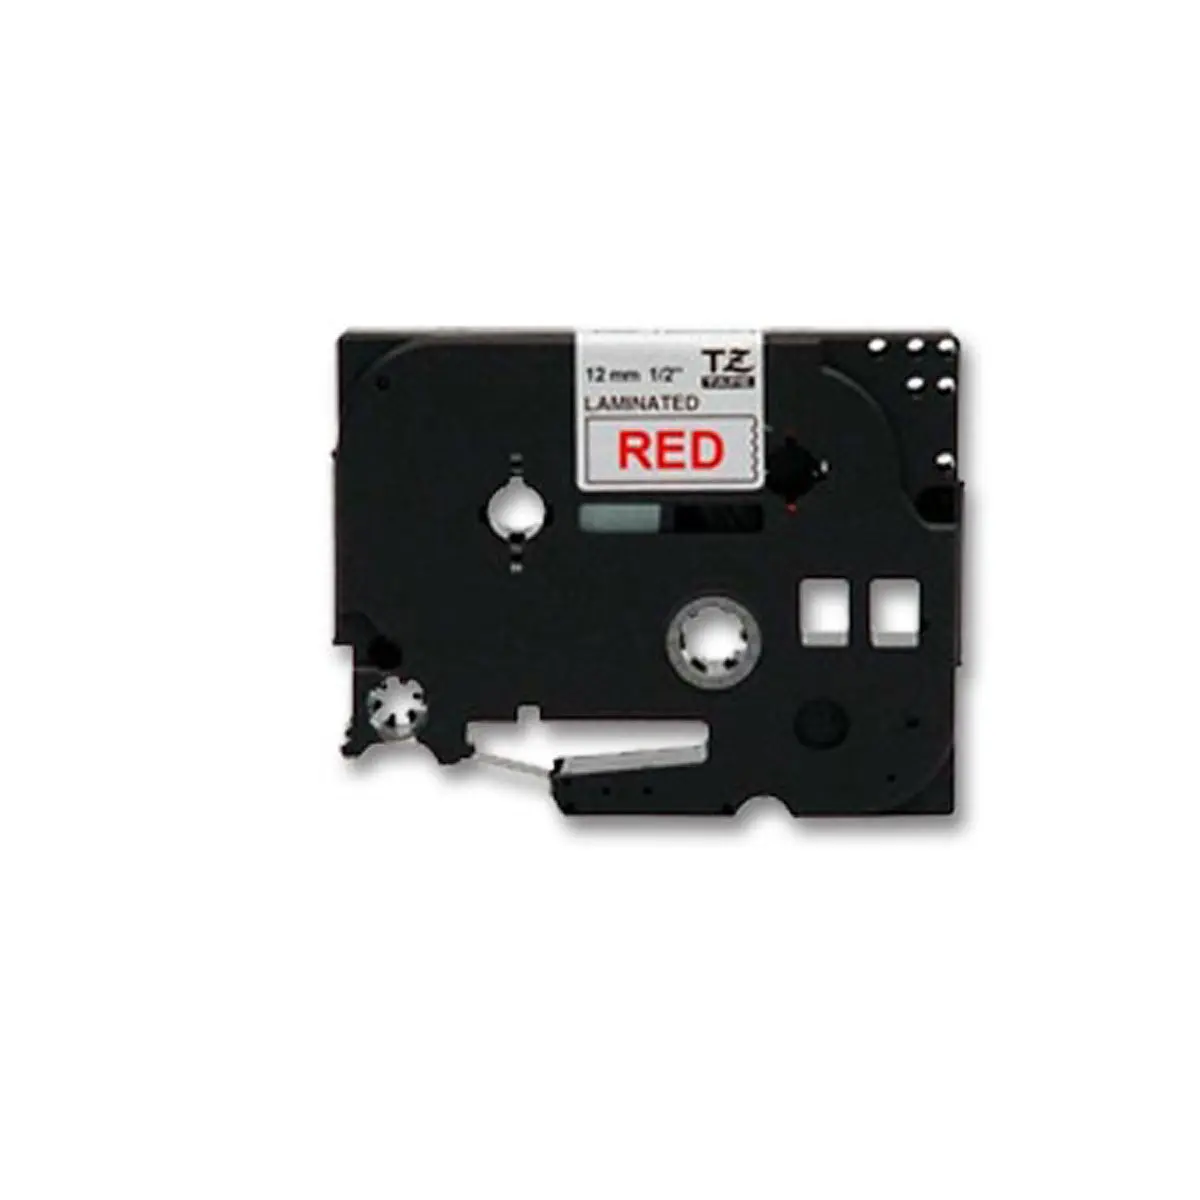 Ruban 8m x 12 mm - BROTHER TZ 232 - texte rouge sur fond blanc photo du produit